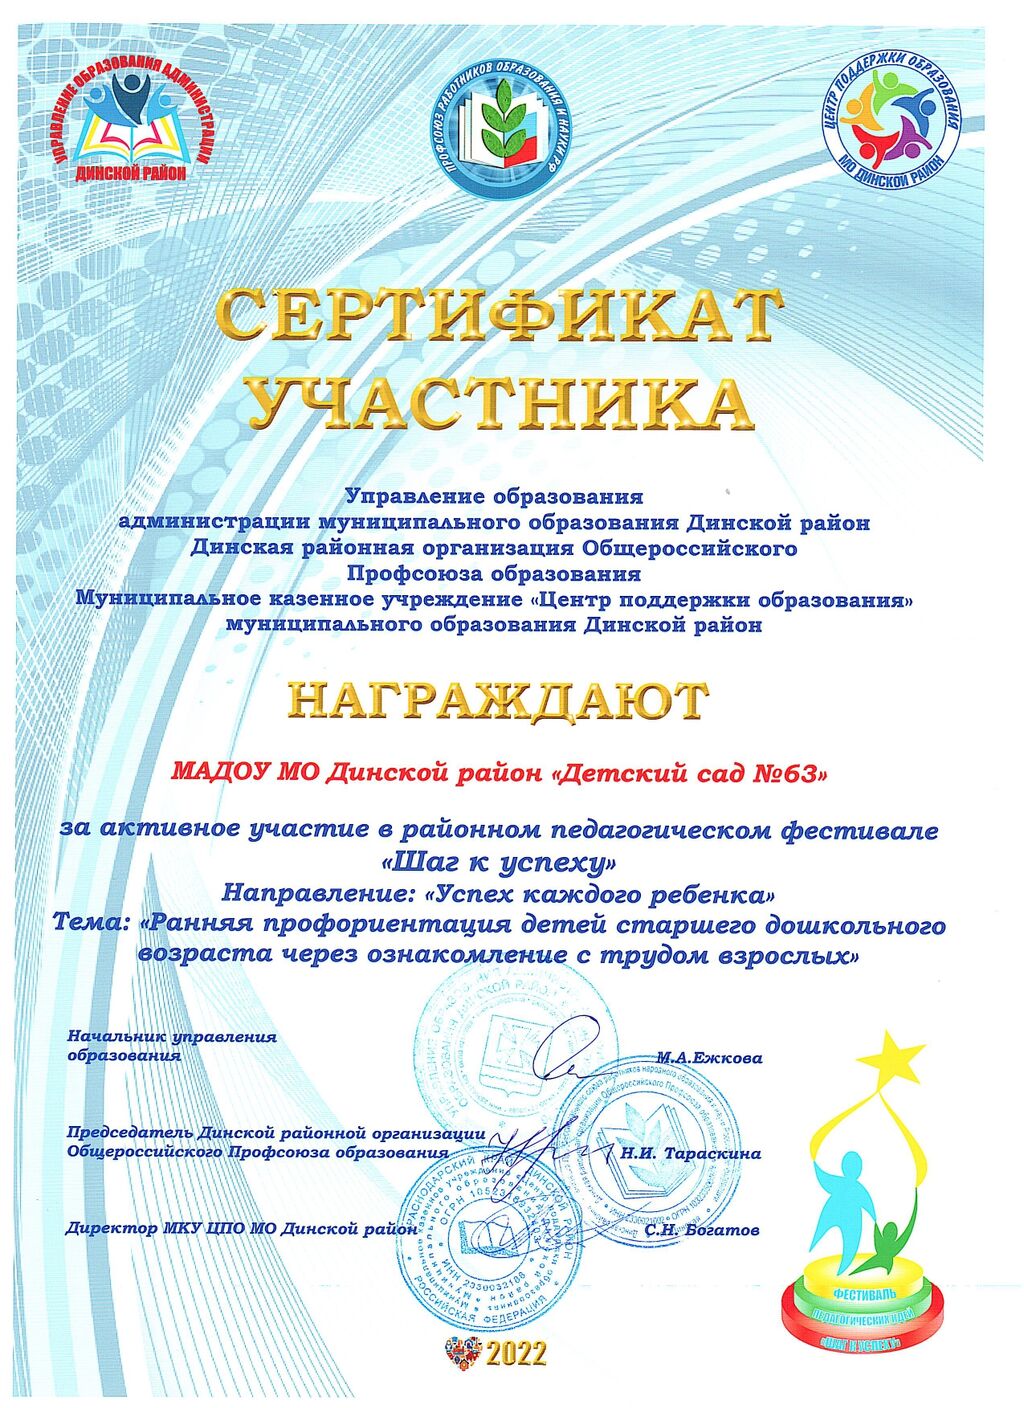 Сертификат участника в районном педагогическом фестивале "Шаг к успеху"